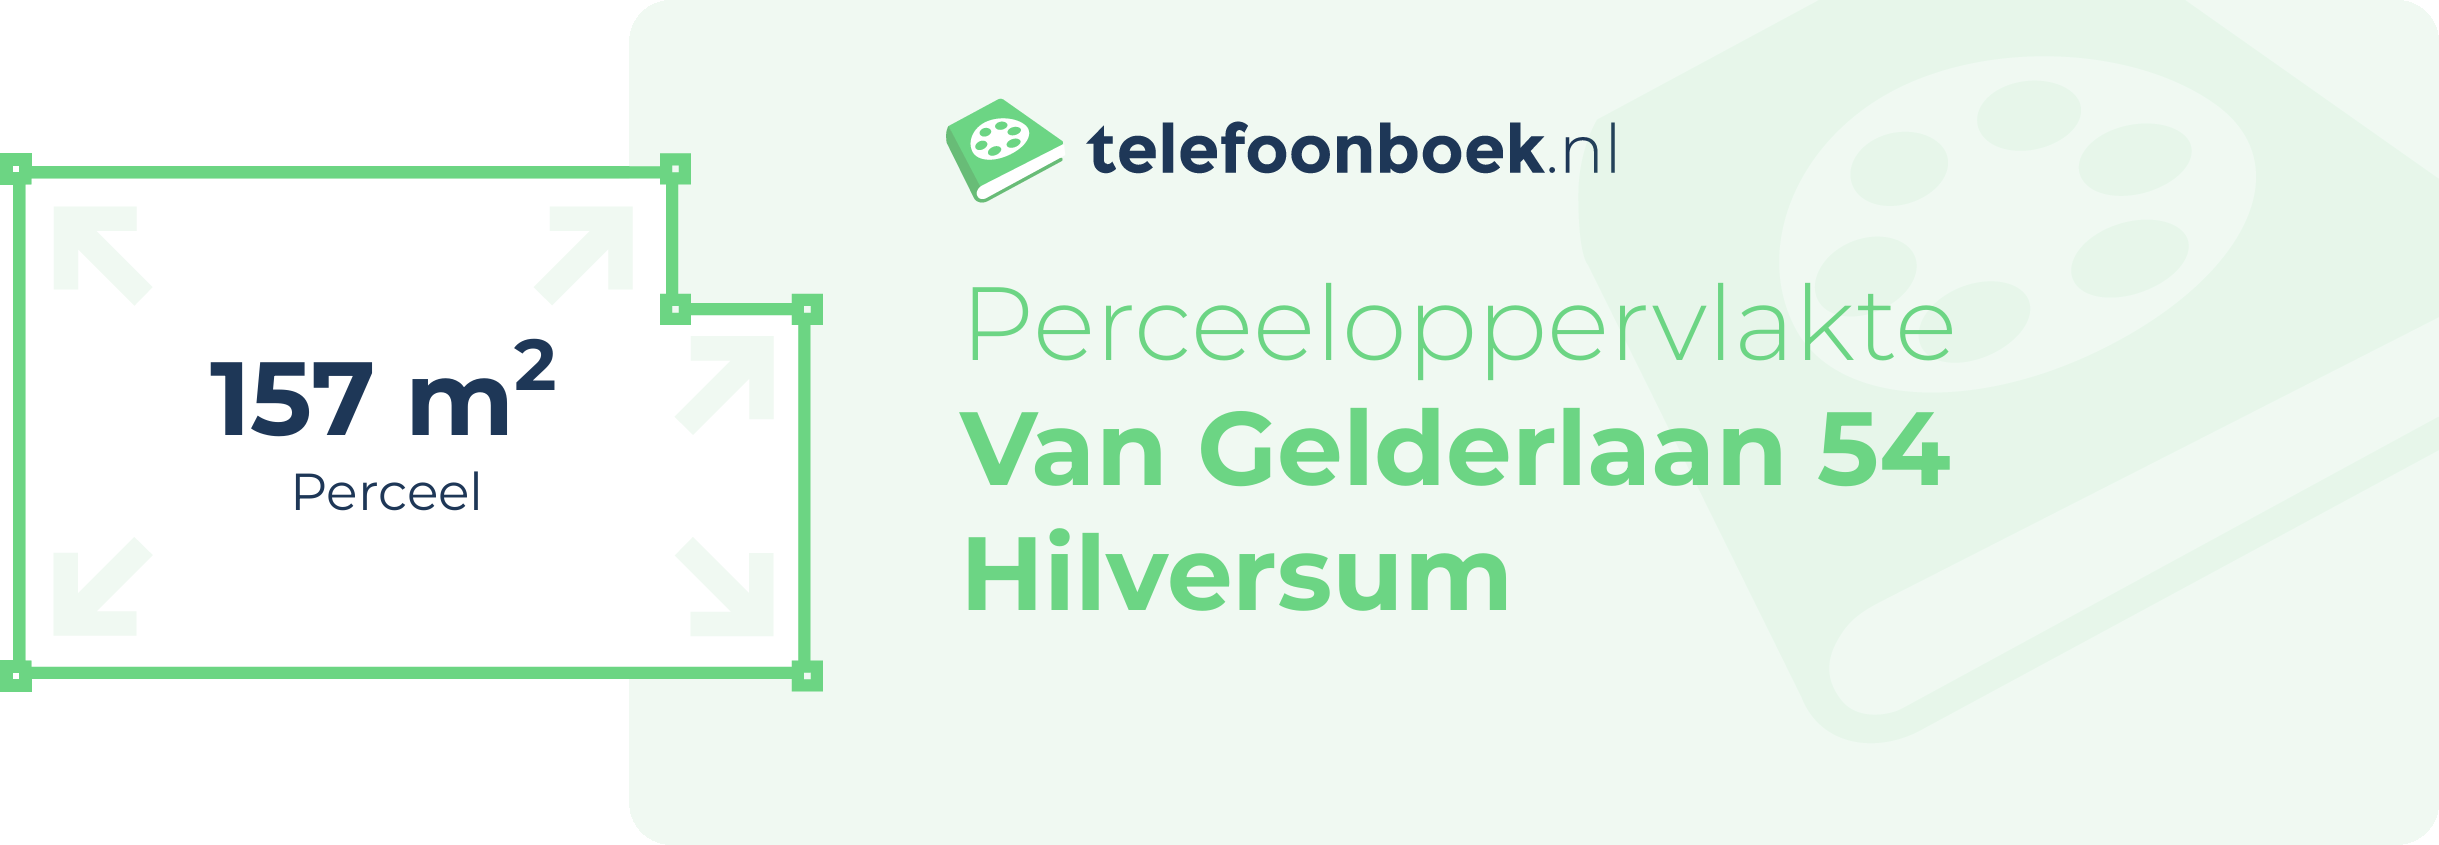 Perceeloppervlakte Van Gelderlaan 54 Hilversum